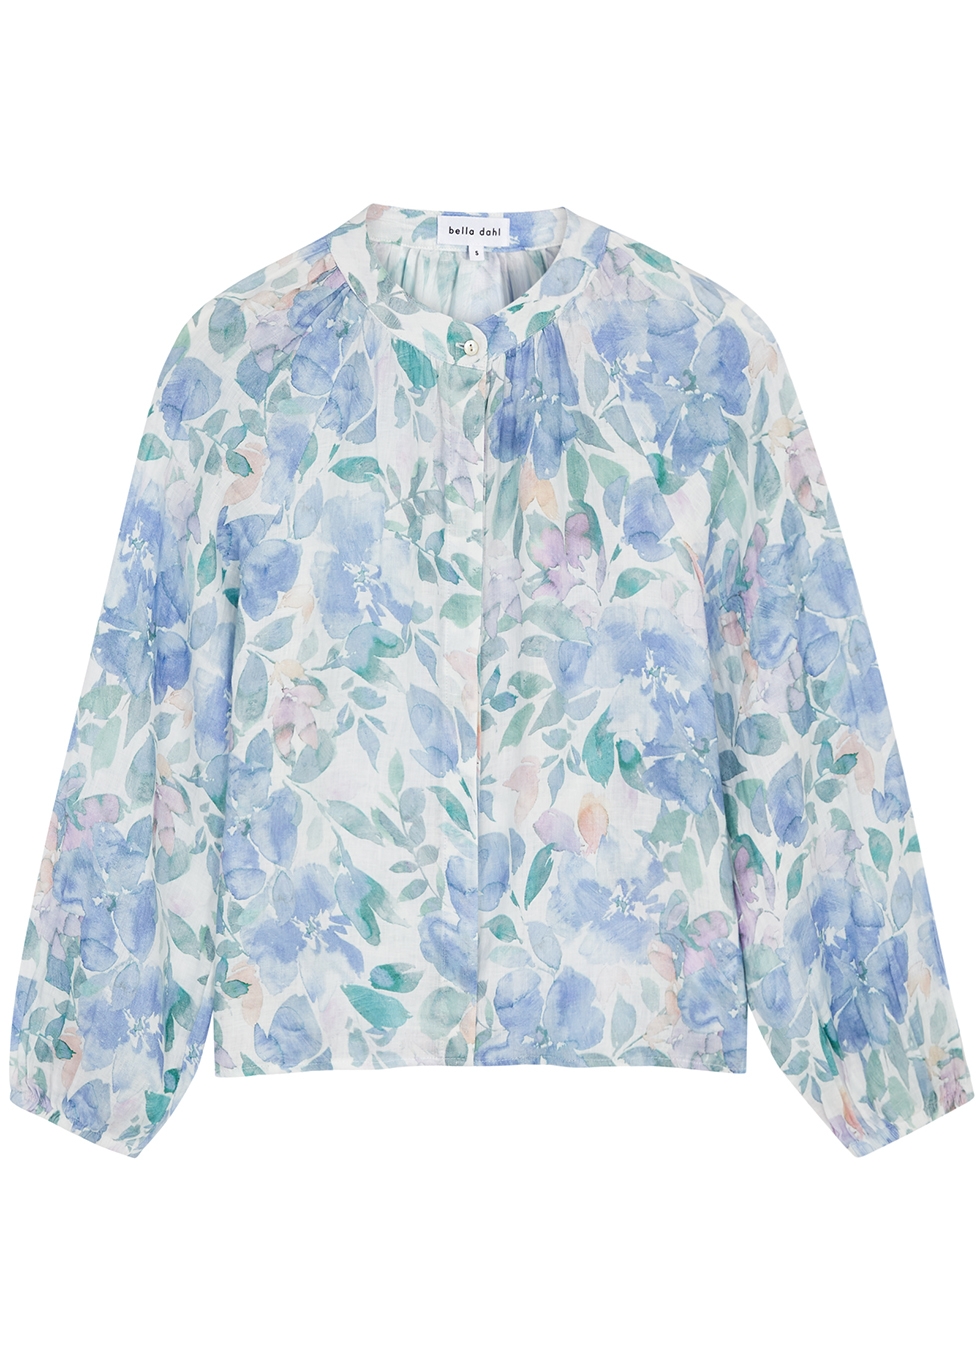 Bella Dahl Floral-print linen blouse - Harvey Nichols